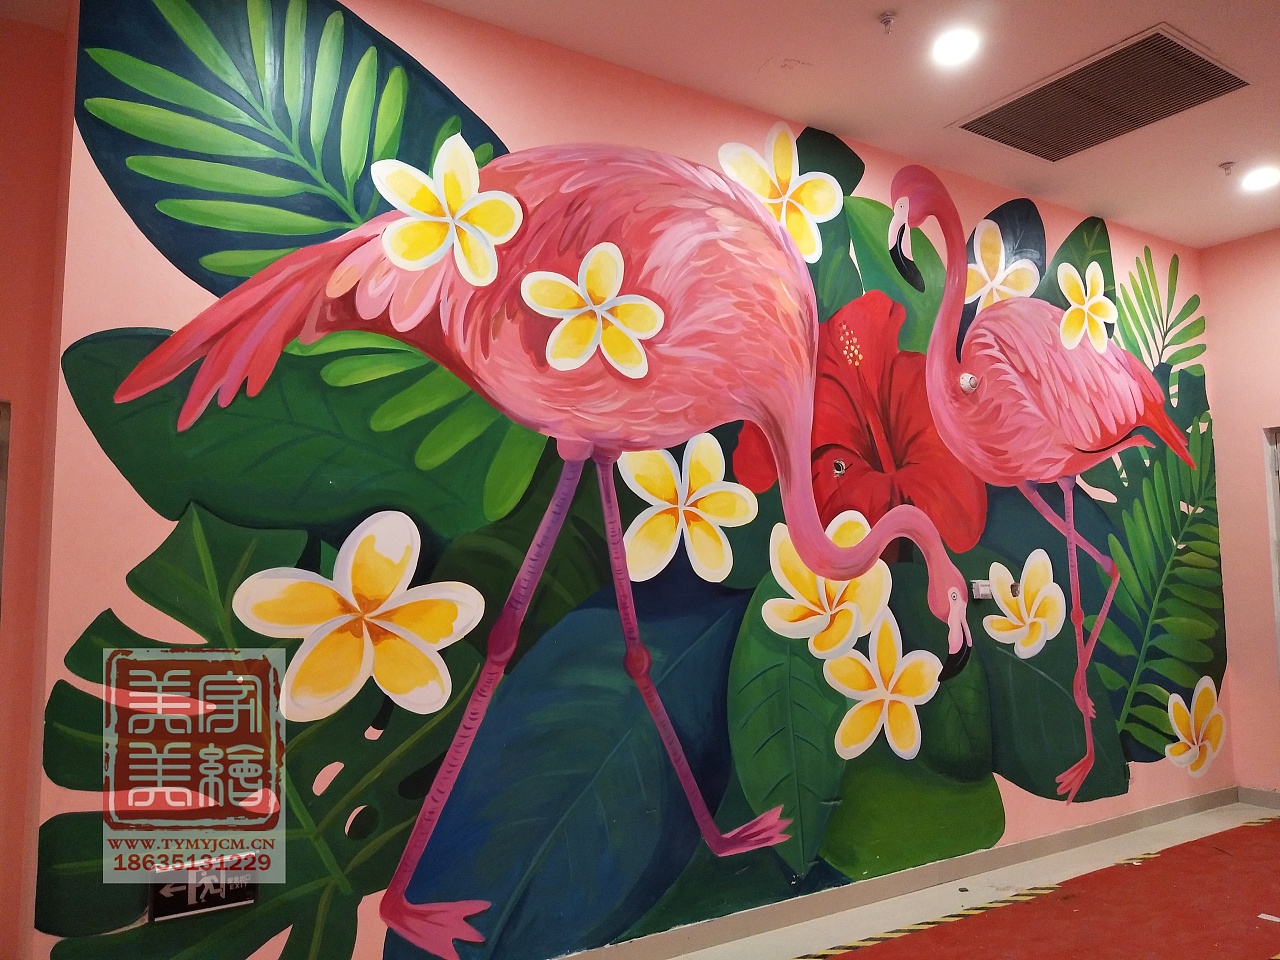 太原网红墙彩绘墙绘,通道美化彩绘,商场美陈彩绘墙绘